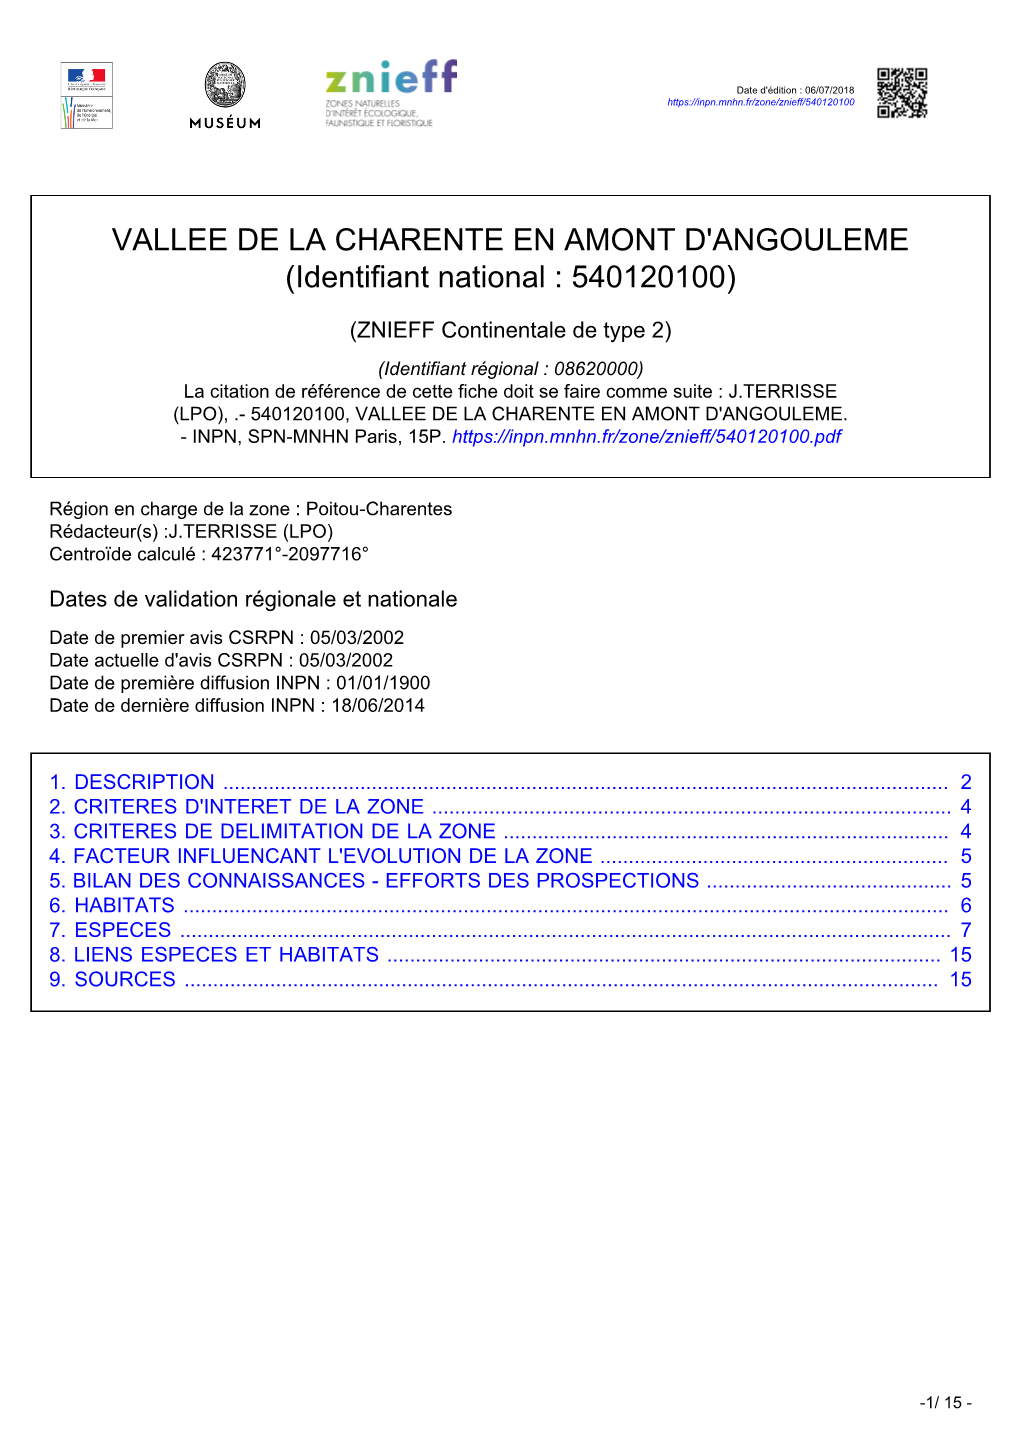 VALLEE DE LA CHARENTE EN AMONT D'angouleme (Identifiant National : 540120100)